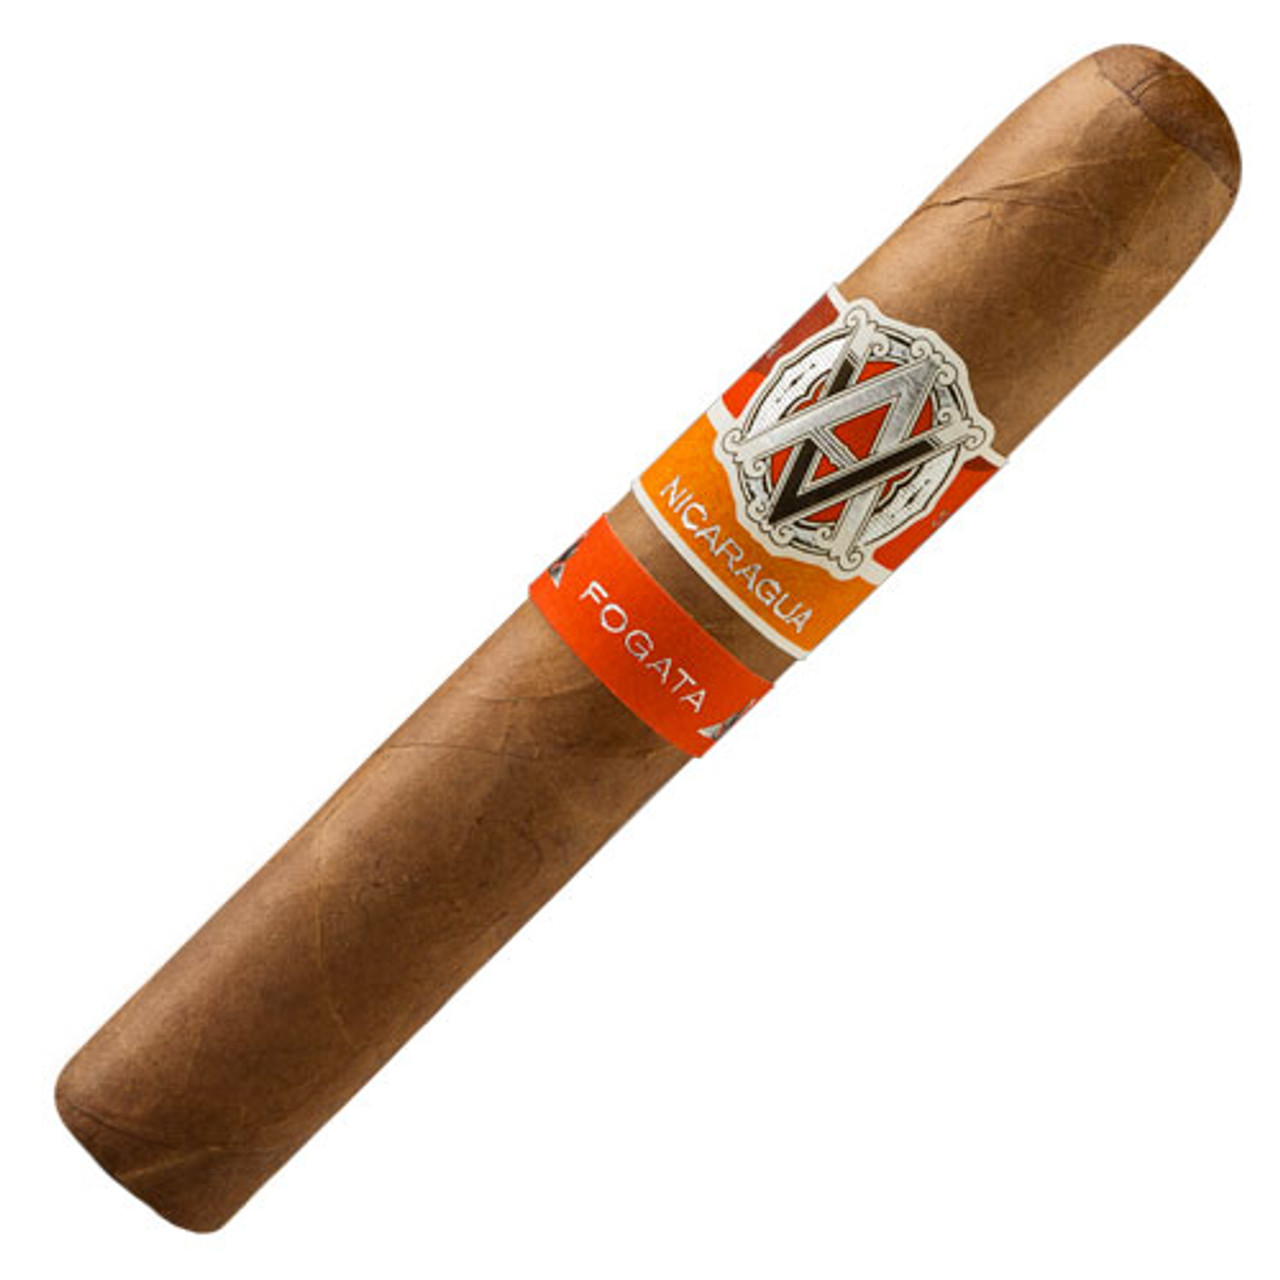 AVO Syncro Nicaragua Fogata Robusto Cigars - 5 x 50 (Box of 20)